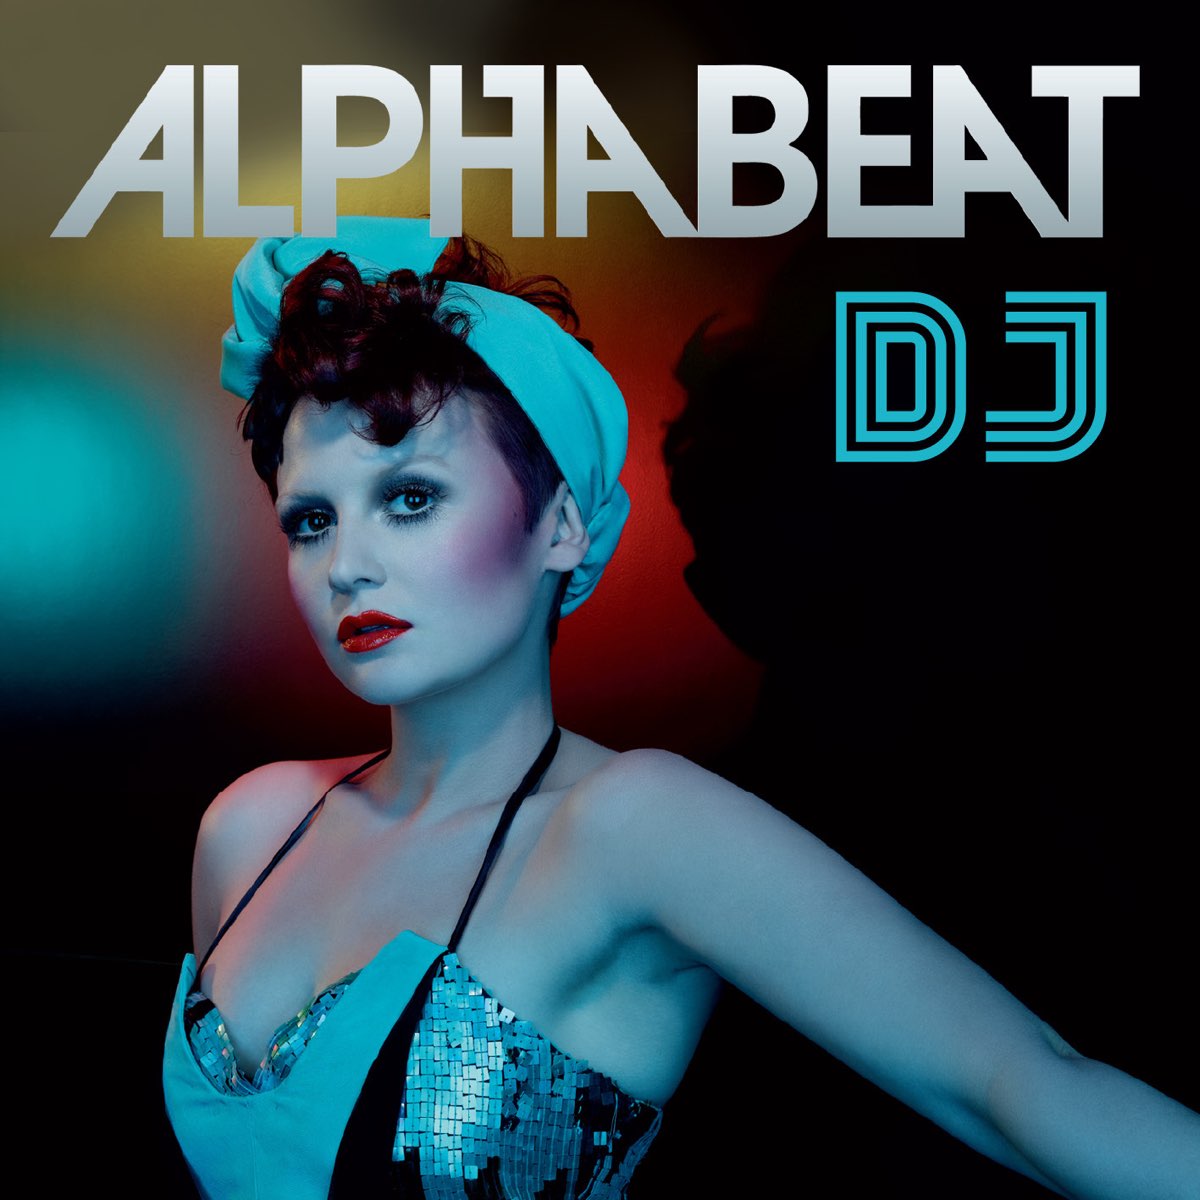 Alphabeat — DJ cover artwork